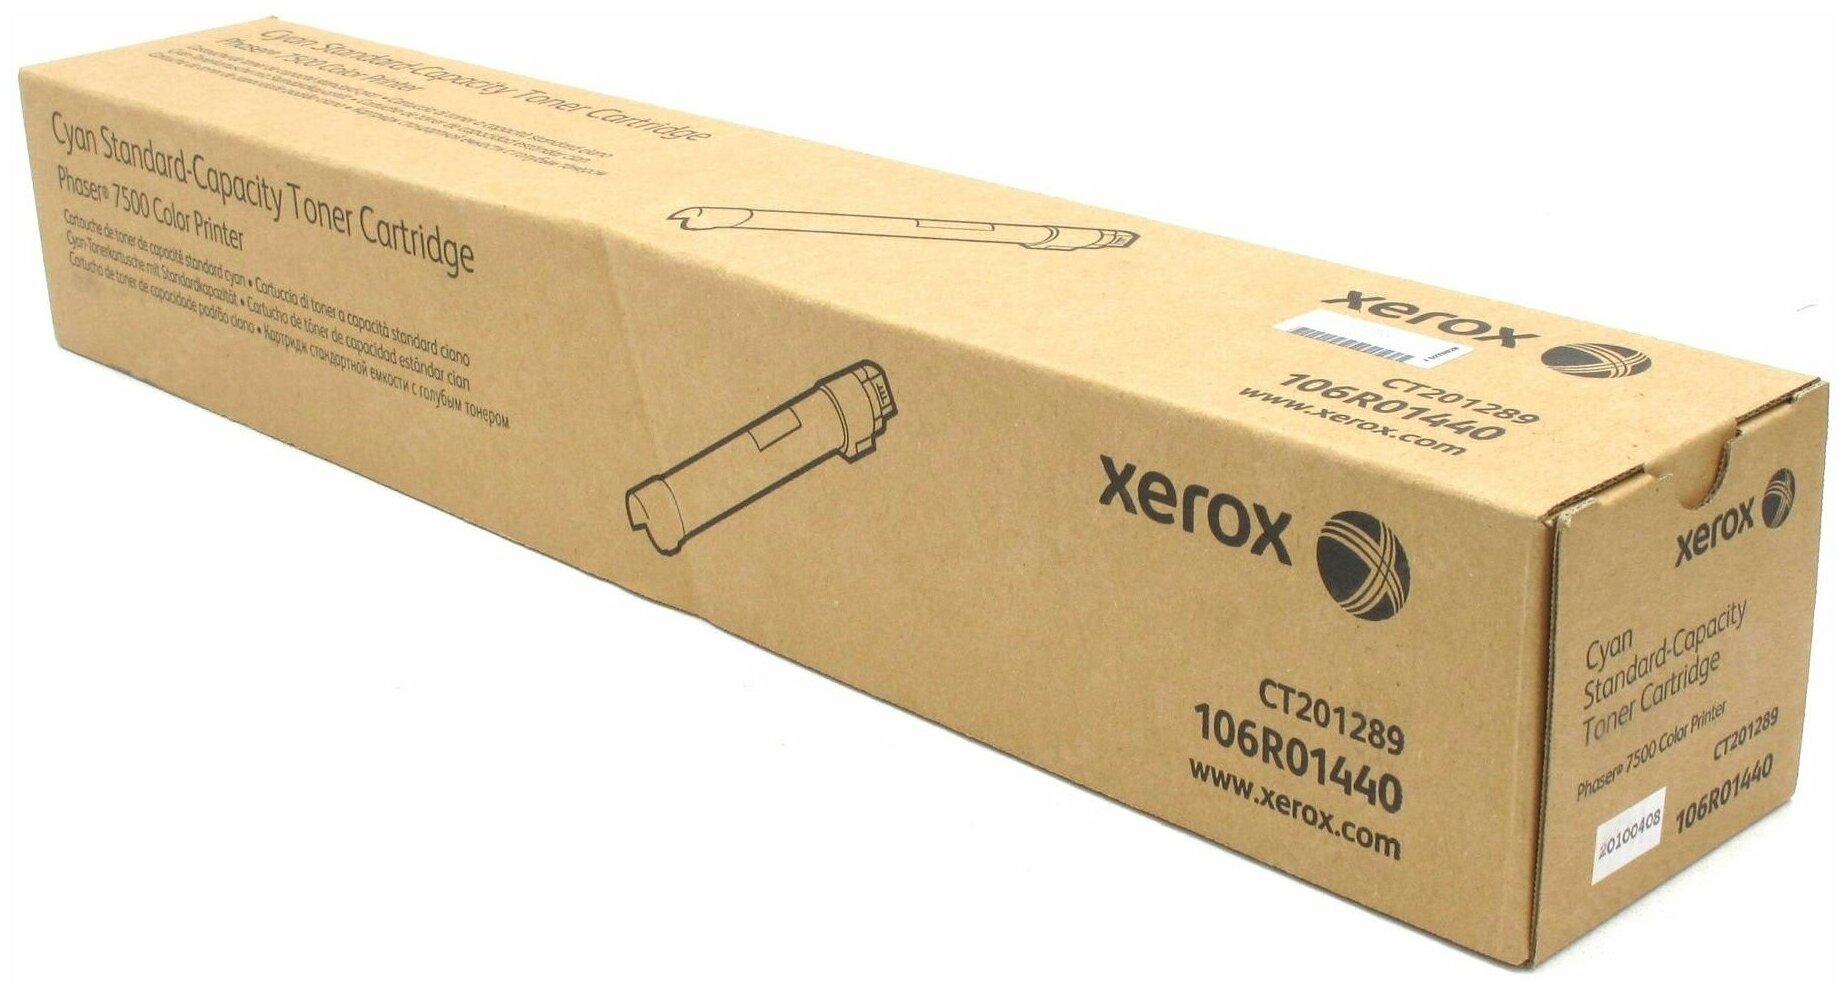 Картридж для лазерного принтера Xerox - фото №3